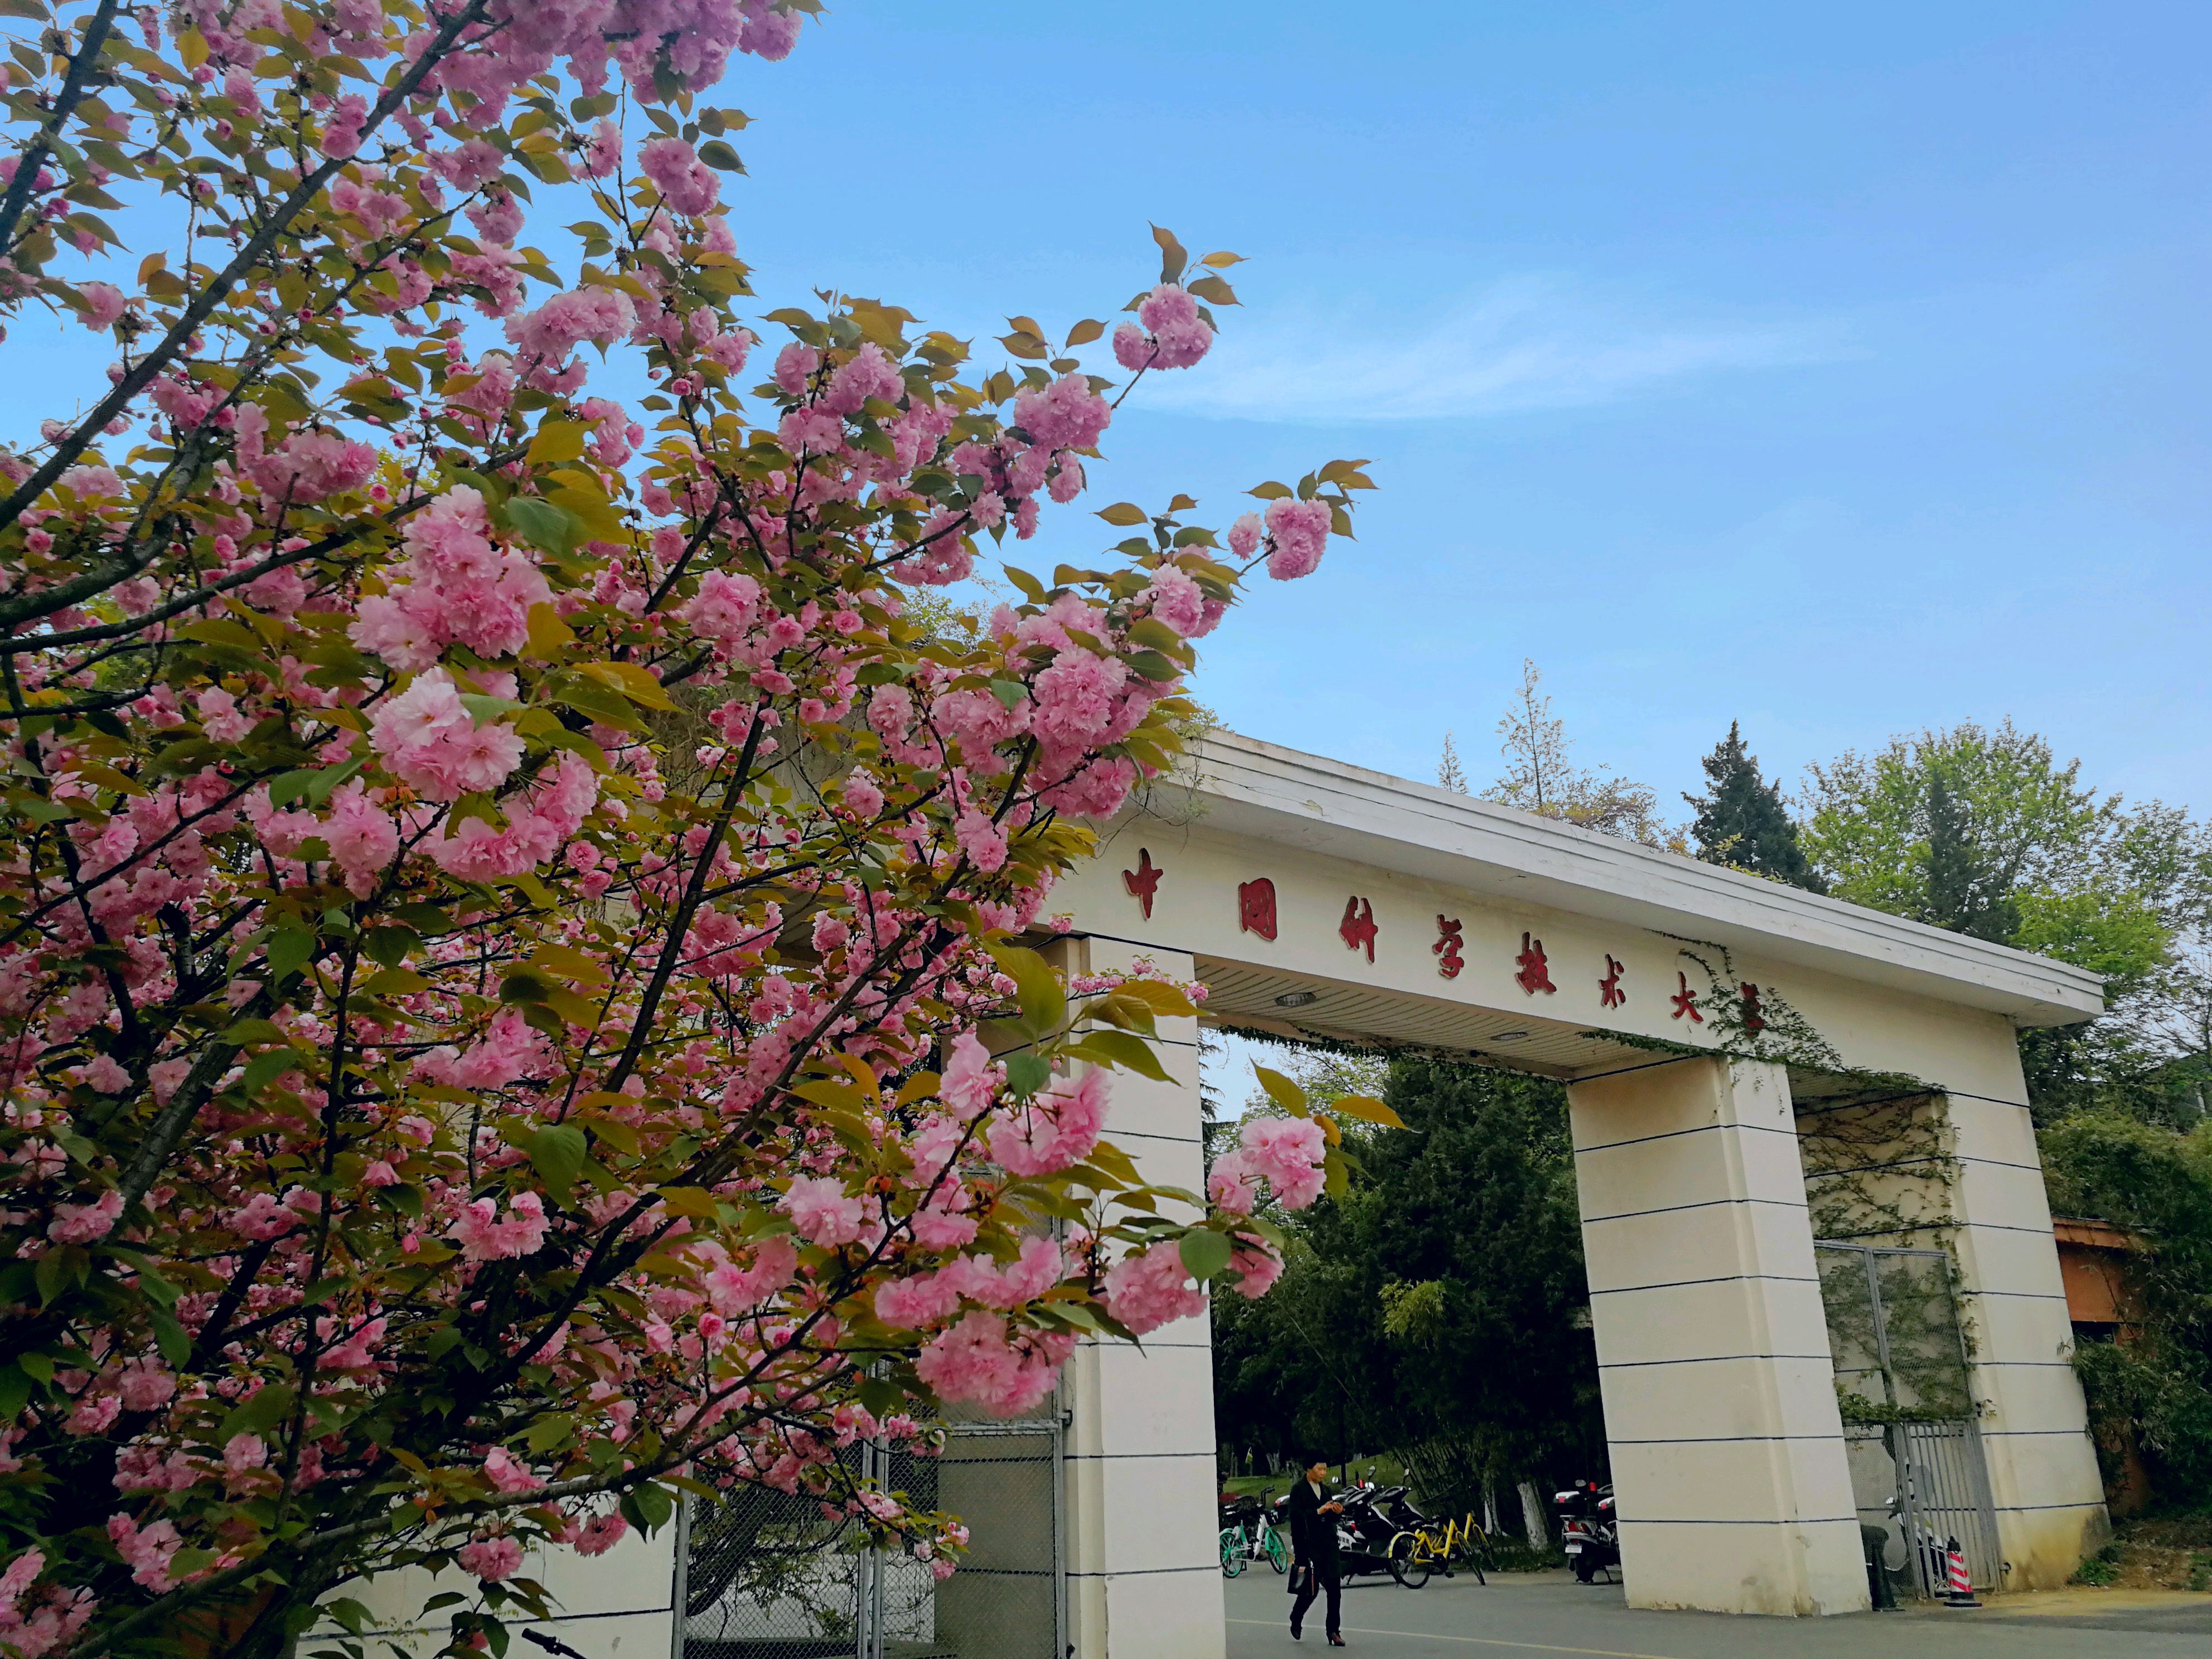 趁春和景明,到中国科大看看樱花